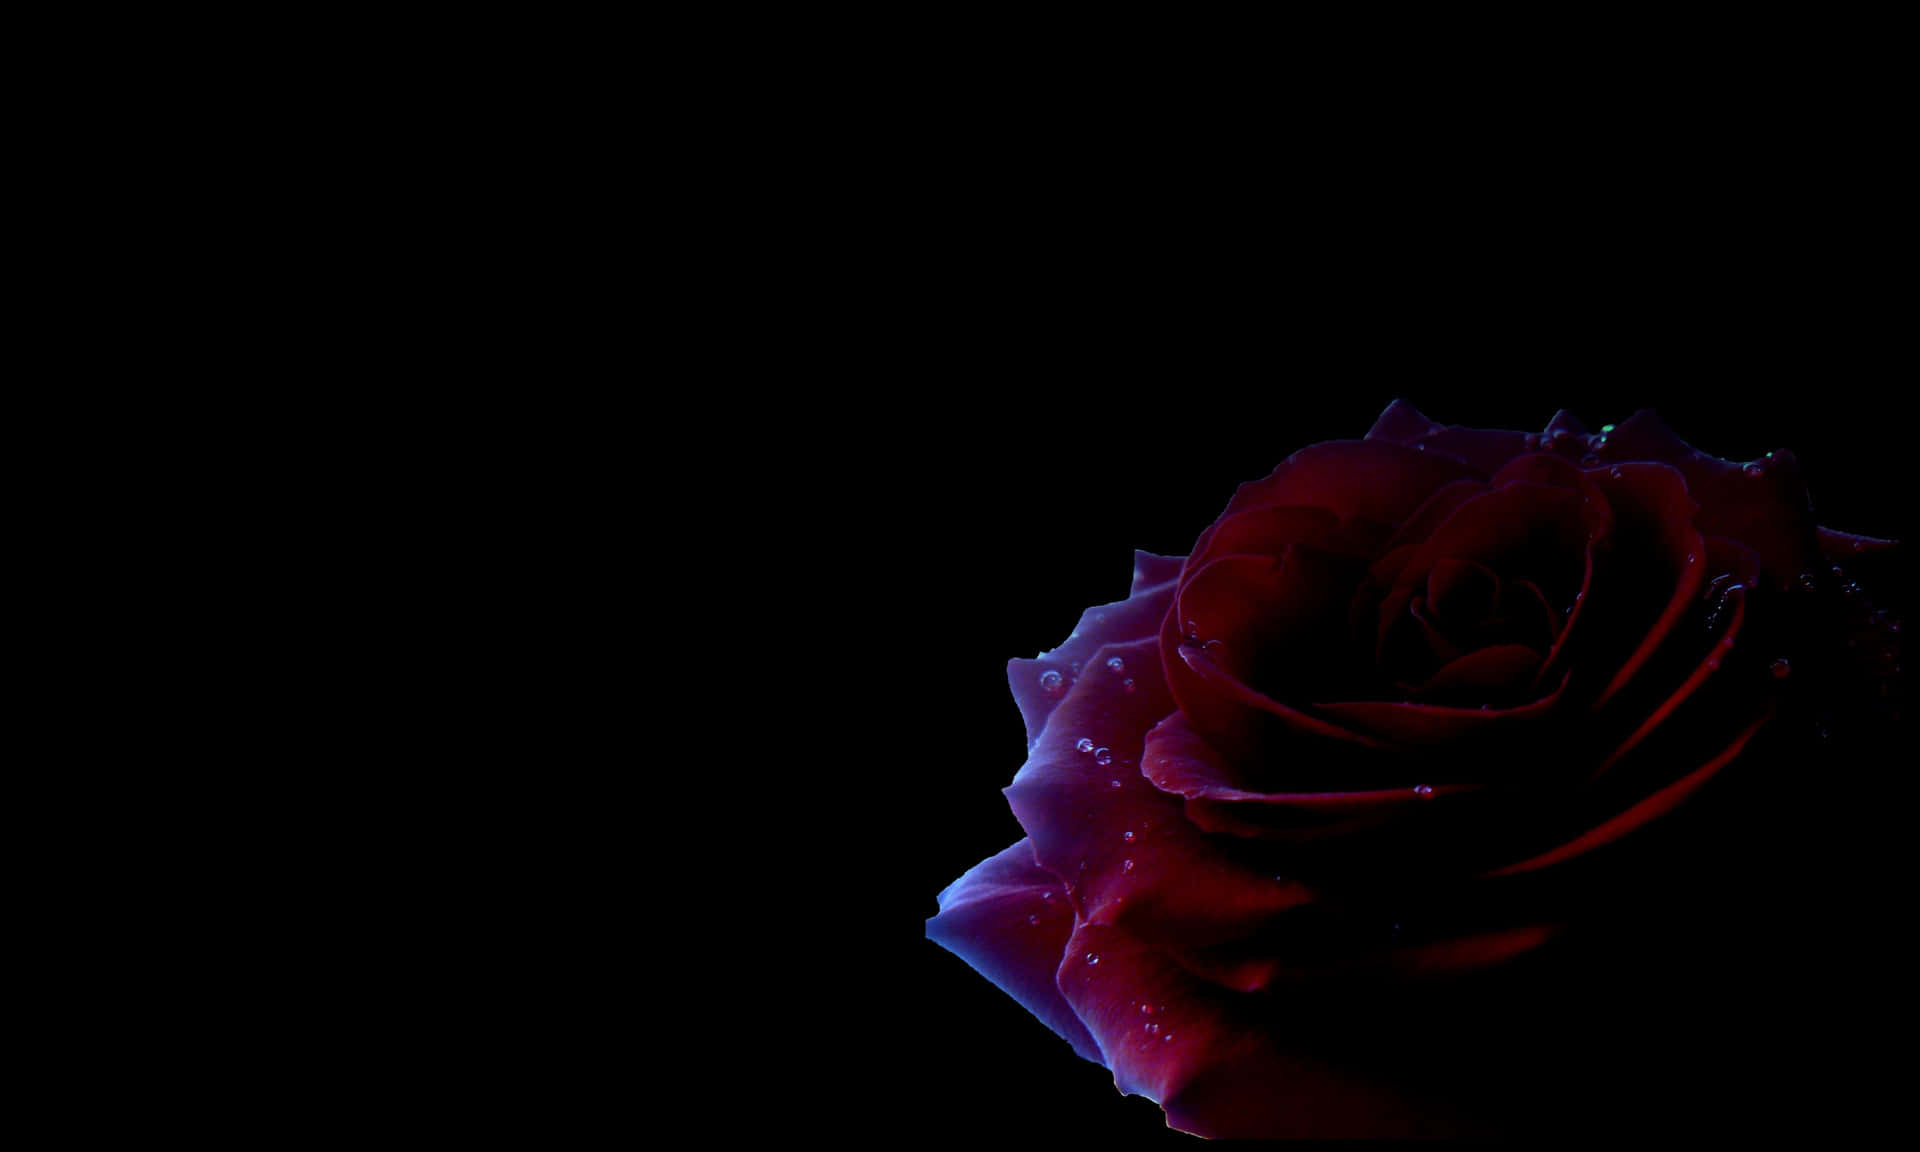 Unallamativa Rosa Negra En Toda Su Belleza Oscura Y Misteriosa. Fondo de pantalla